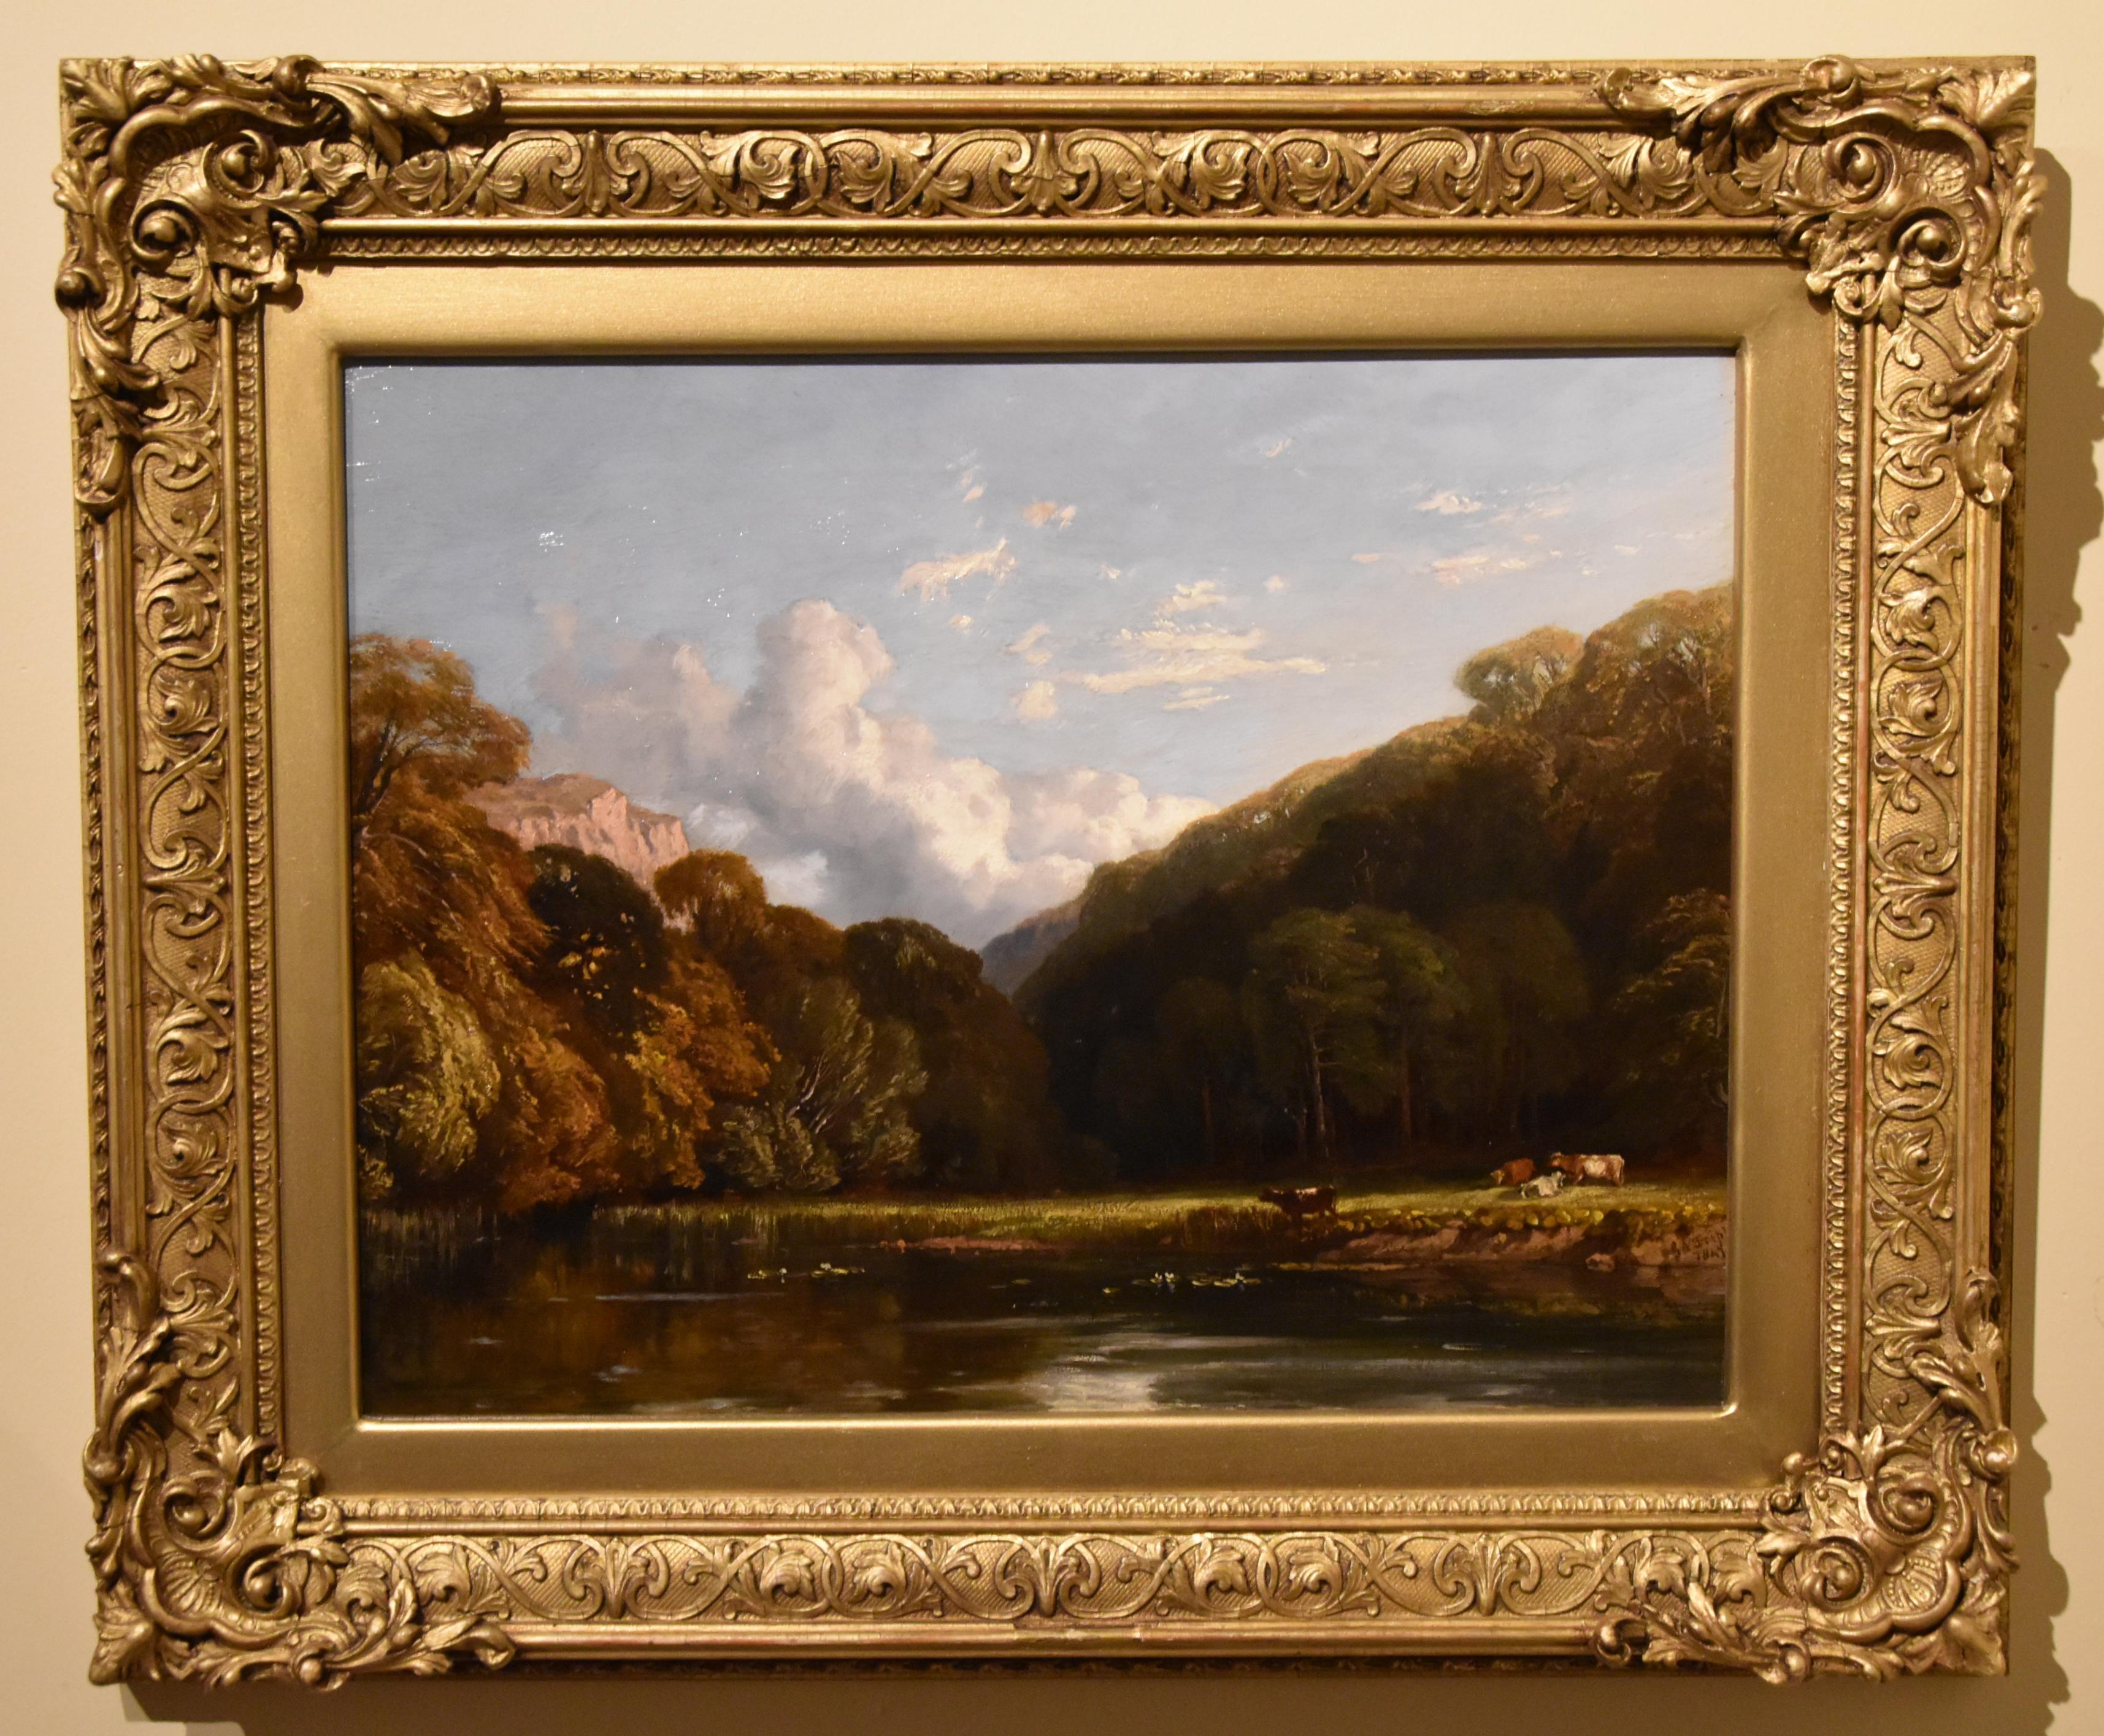 Peinture à l'huile de George Arthur Fripp R.W.S "A Woodland Scene" RBA 1813 - 1896. Peintre de Bristol à l'huile et à l'aquarelle de paysages tranquilles. Il a exposé à la Royal Academy et à la Royal Watercolour Society dont il était membre. Huile